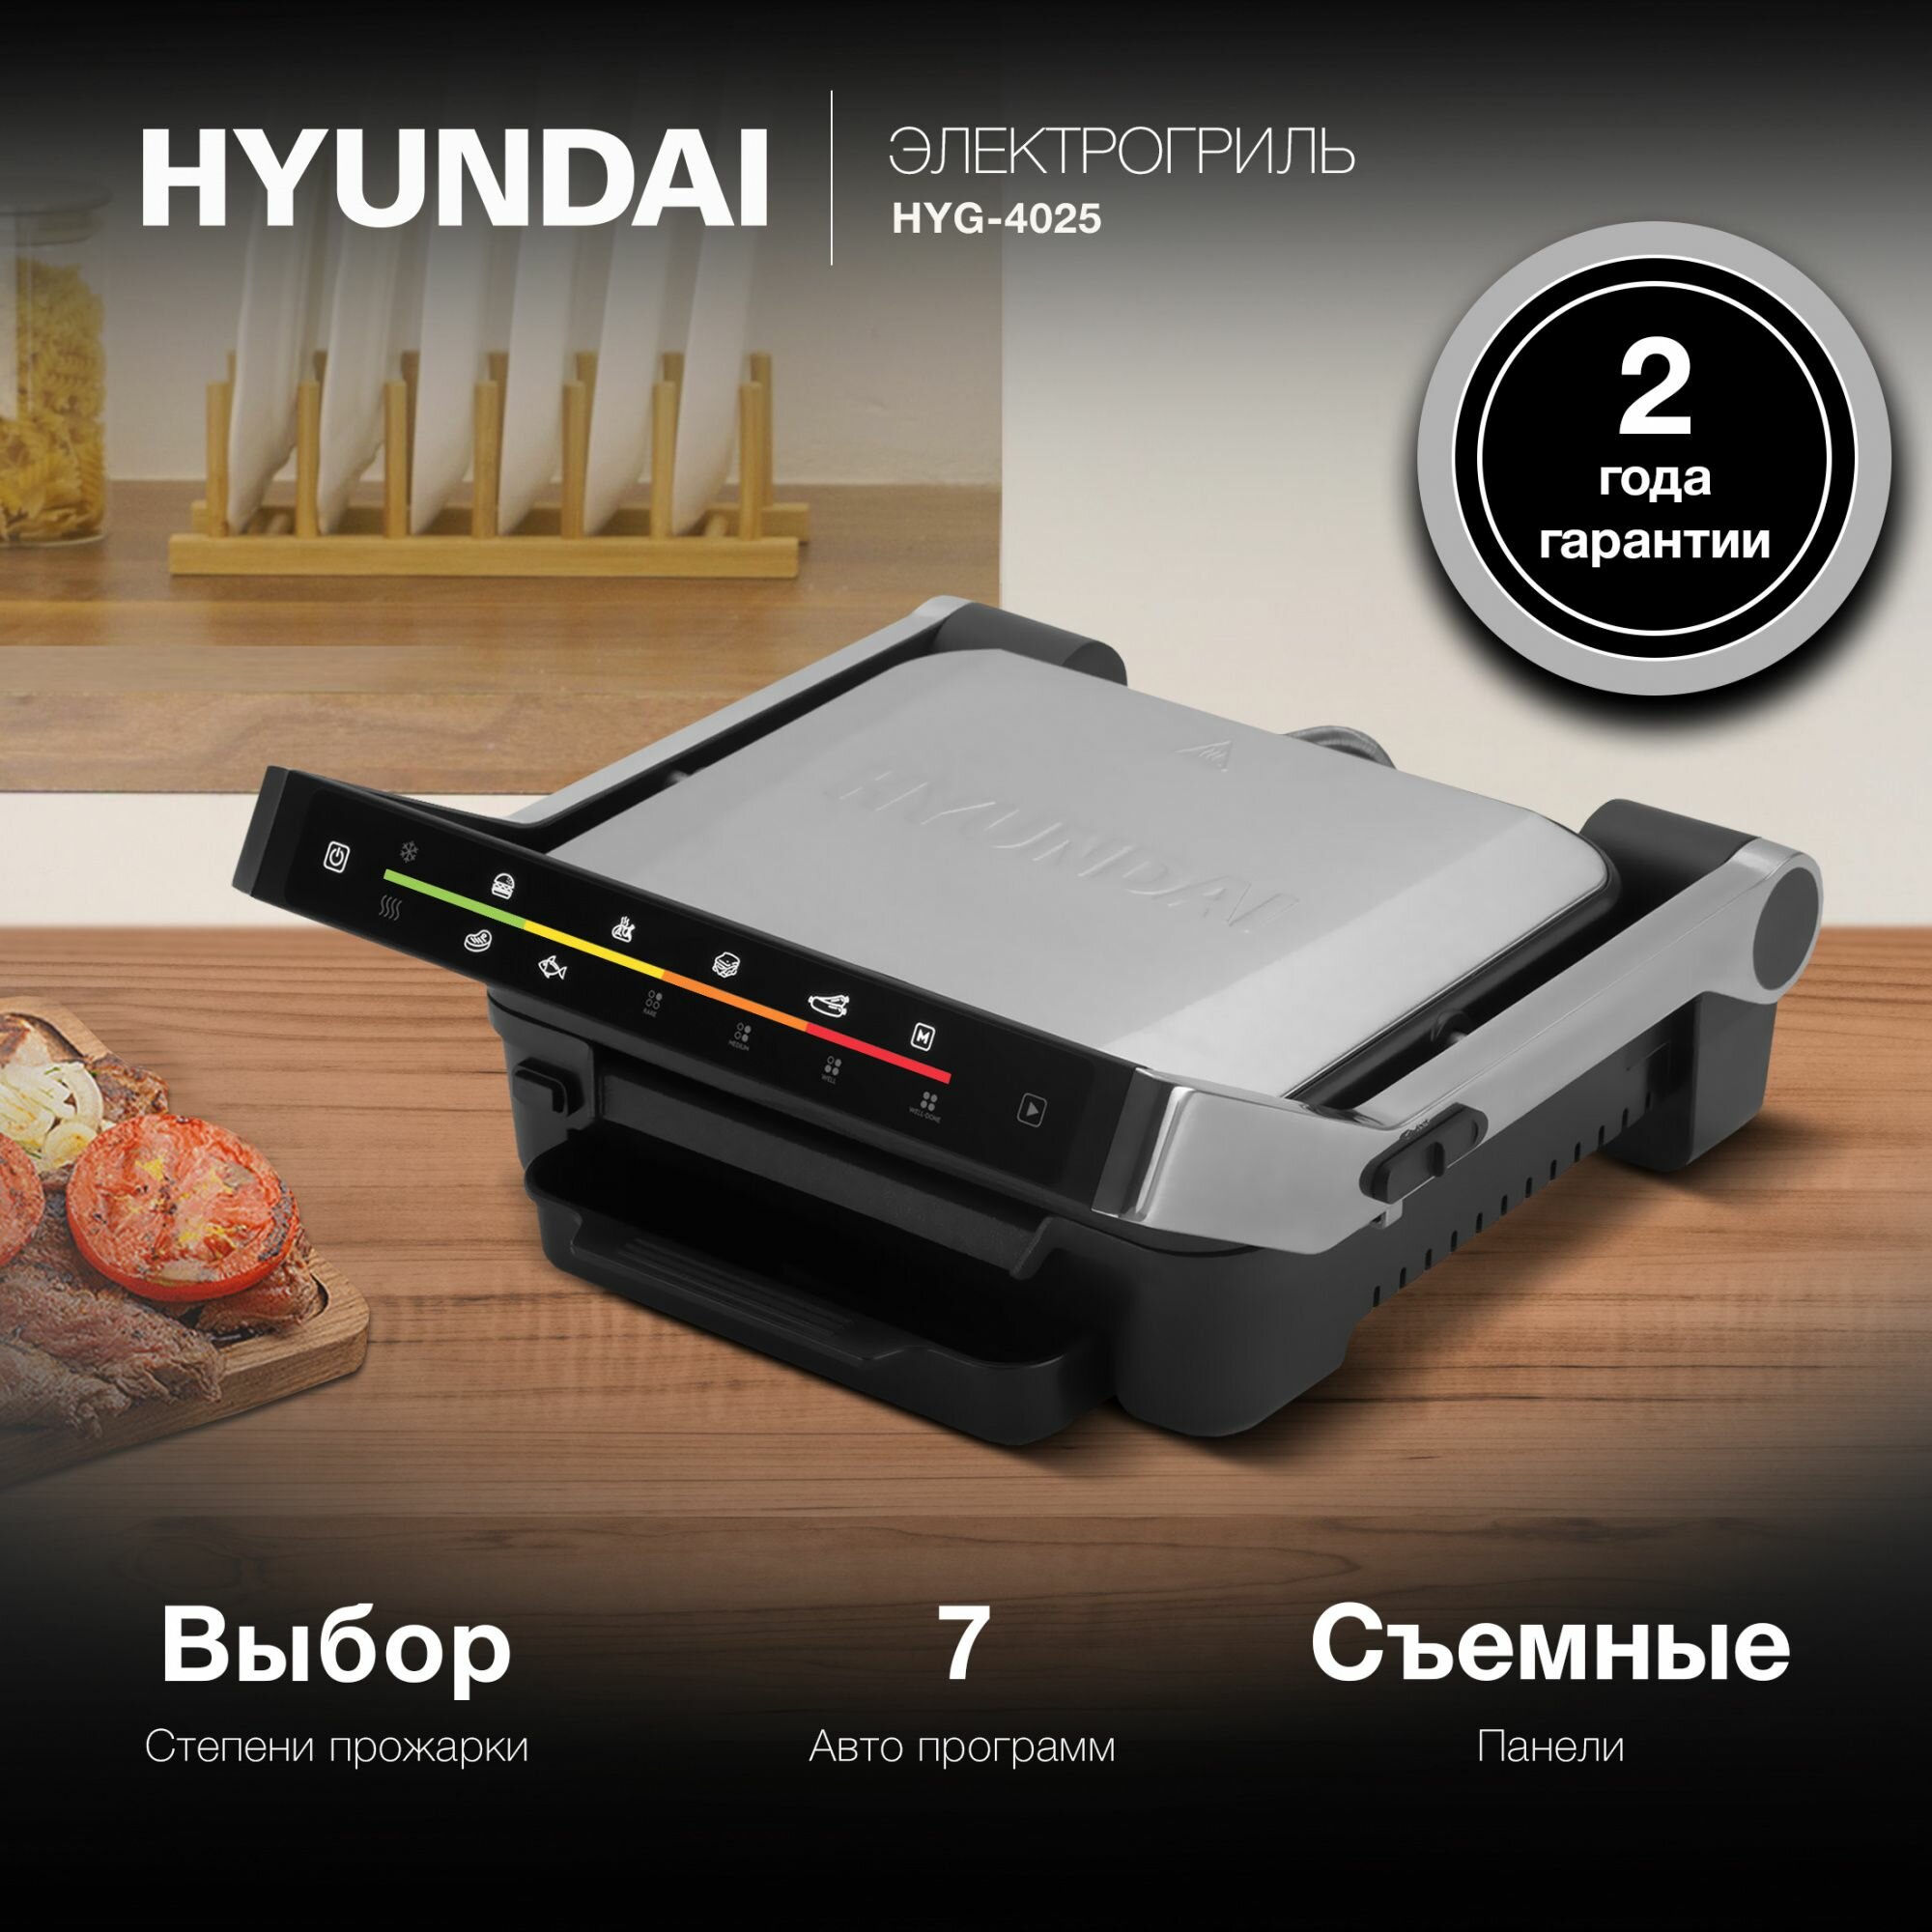 Электрогриль Hyundai HYG-4025 серебристый/черный - фото №9